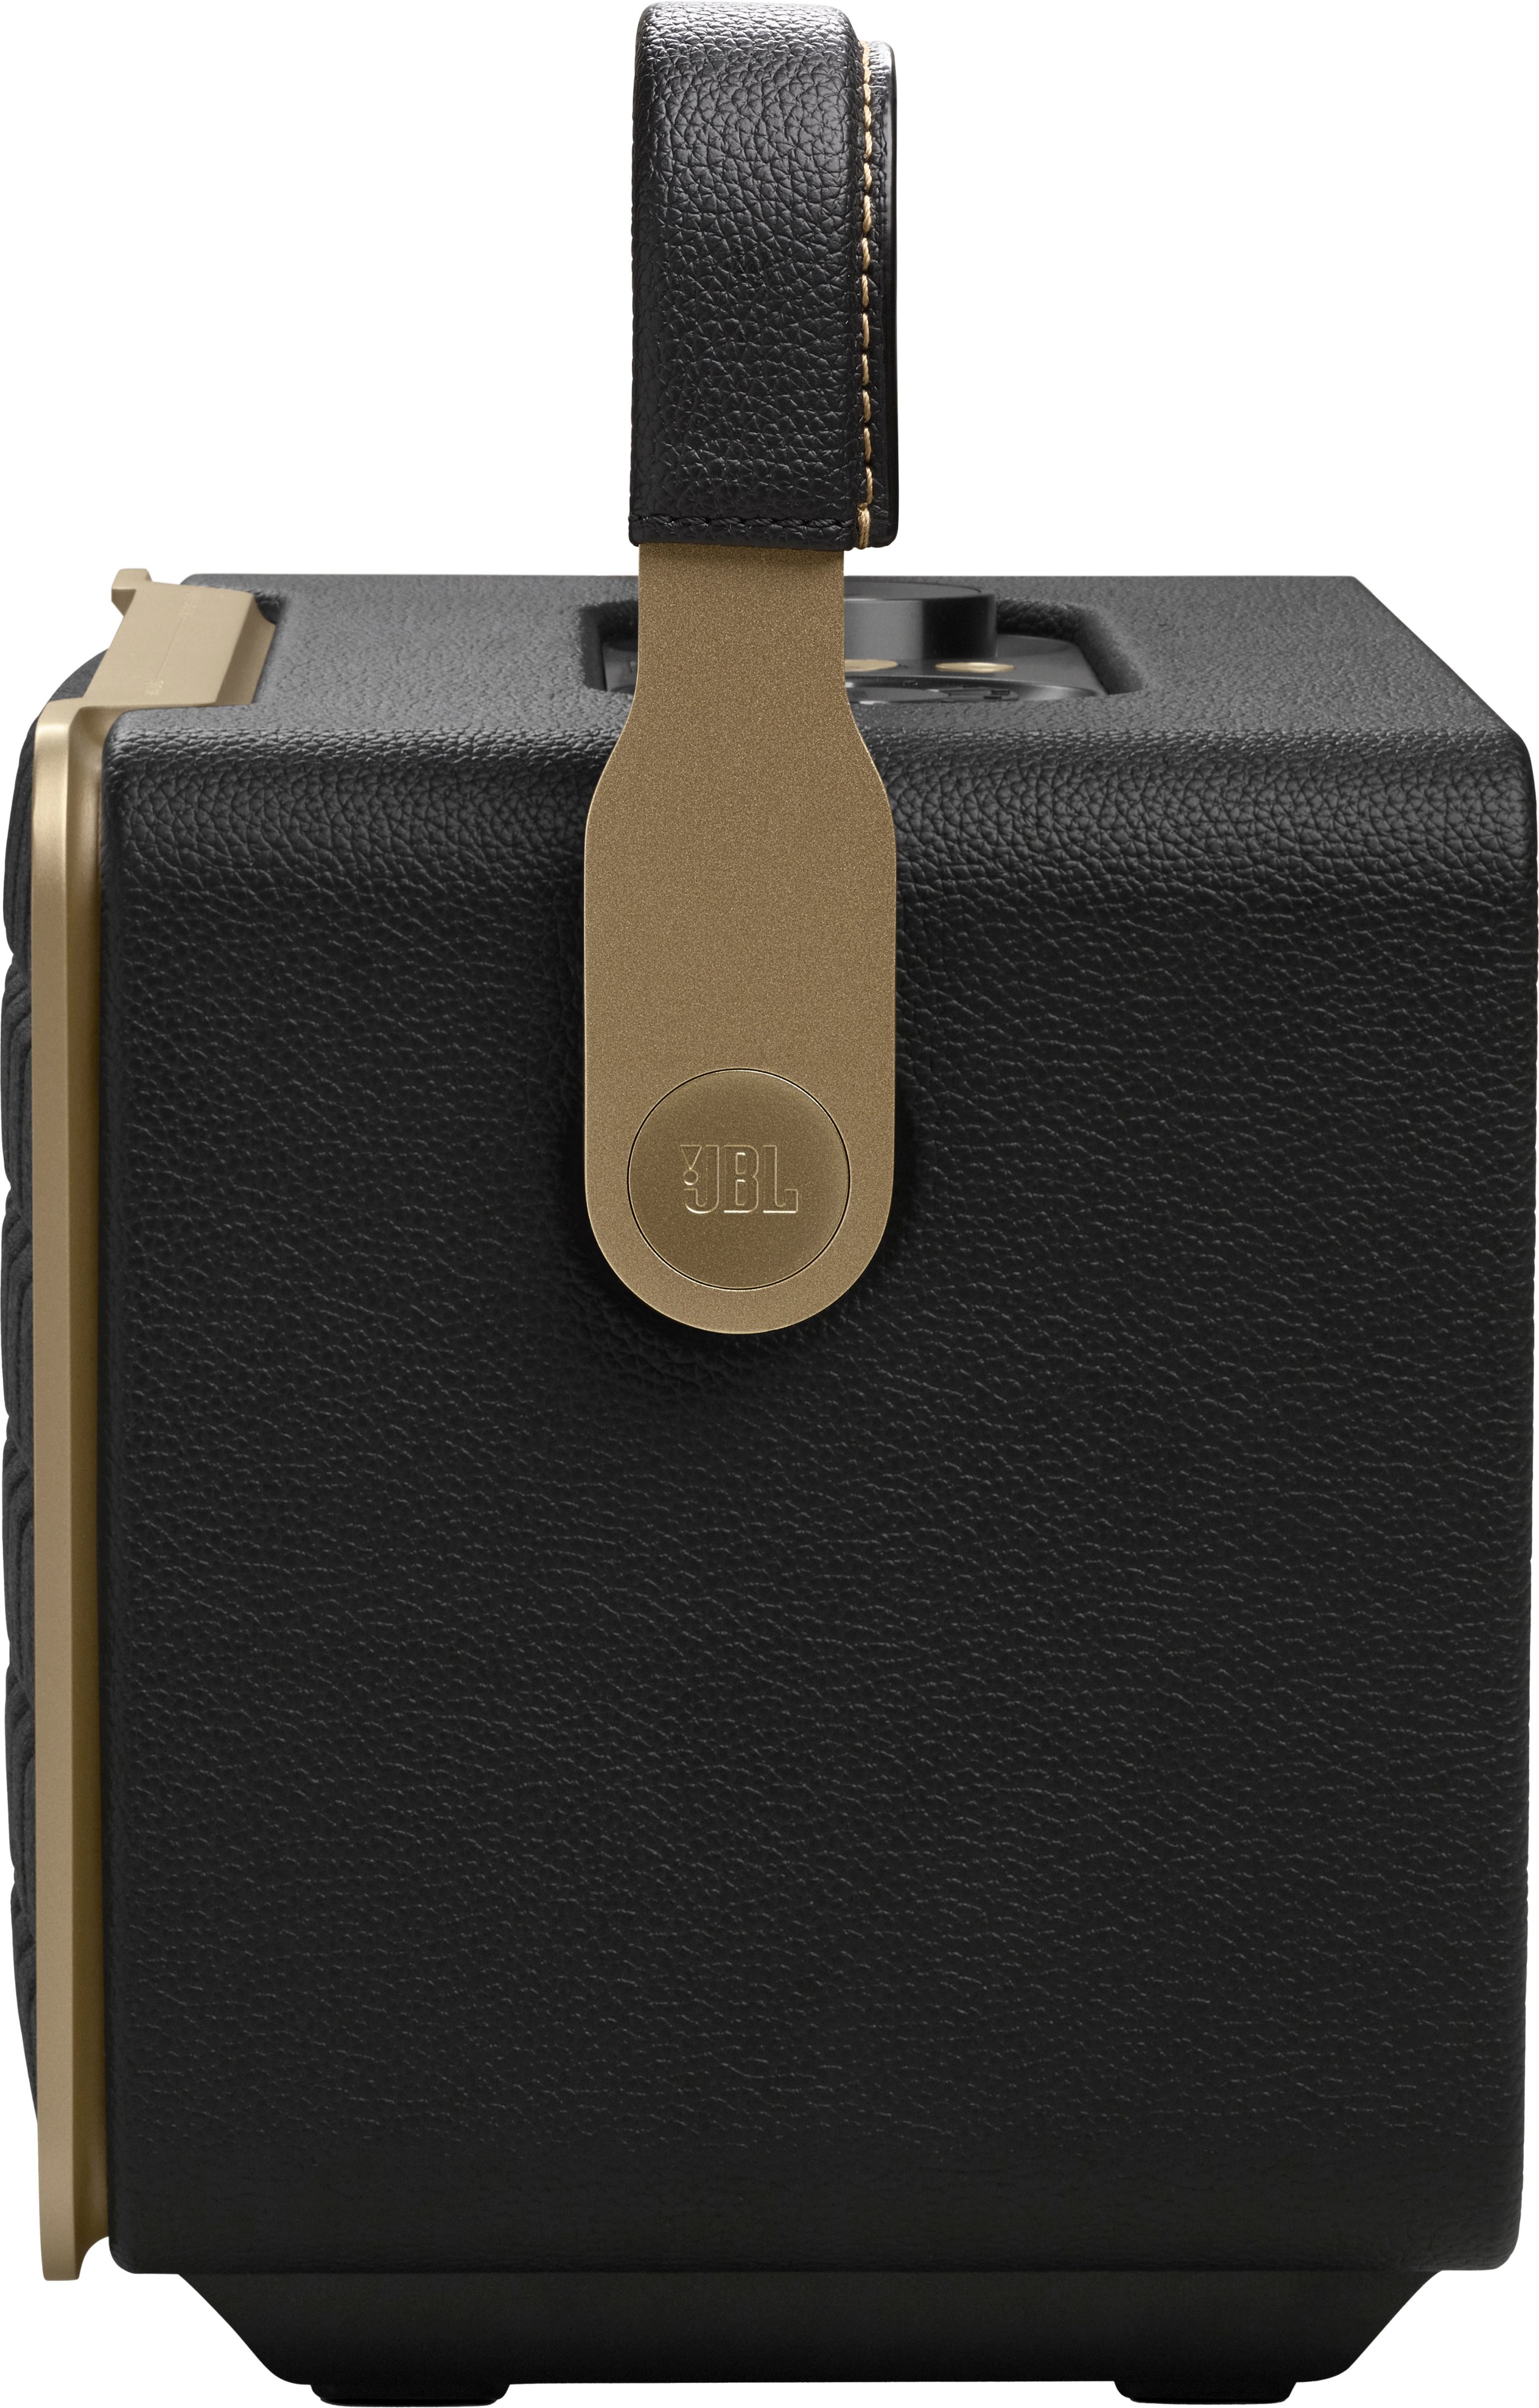 JBL Authentics 300 Smart Home Speaker Black JBLAUTH300BLKAM - Best Buy | Lautsprecher